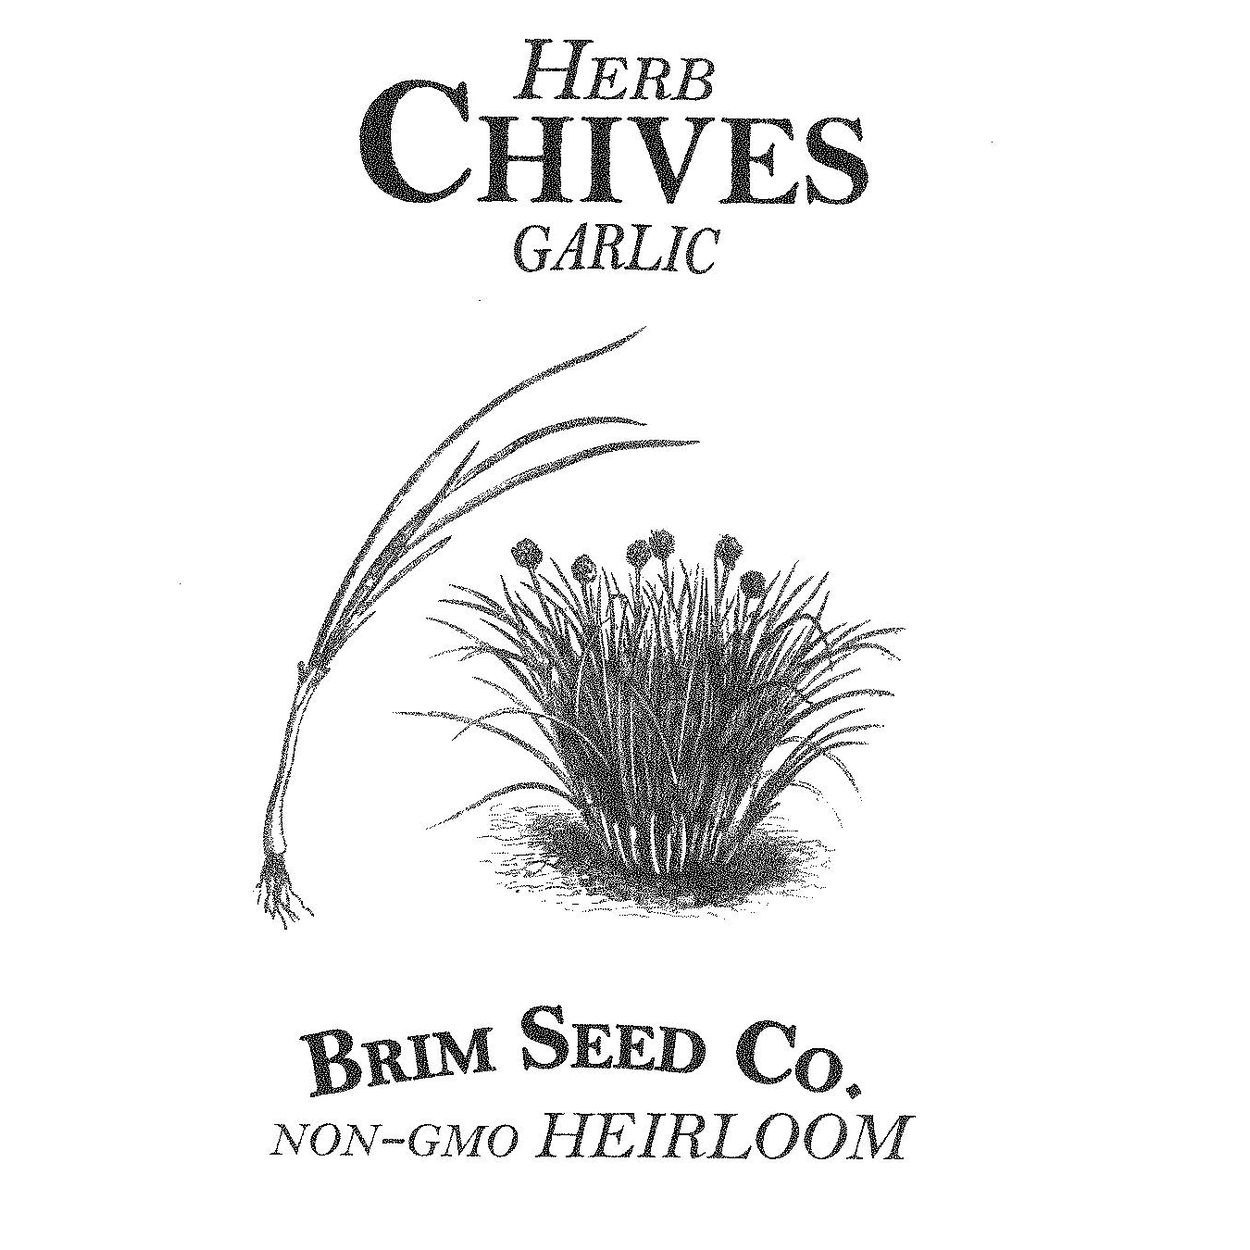 Brim Seed Co. - Garlic Chives Herb Heirloom Seed